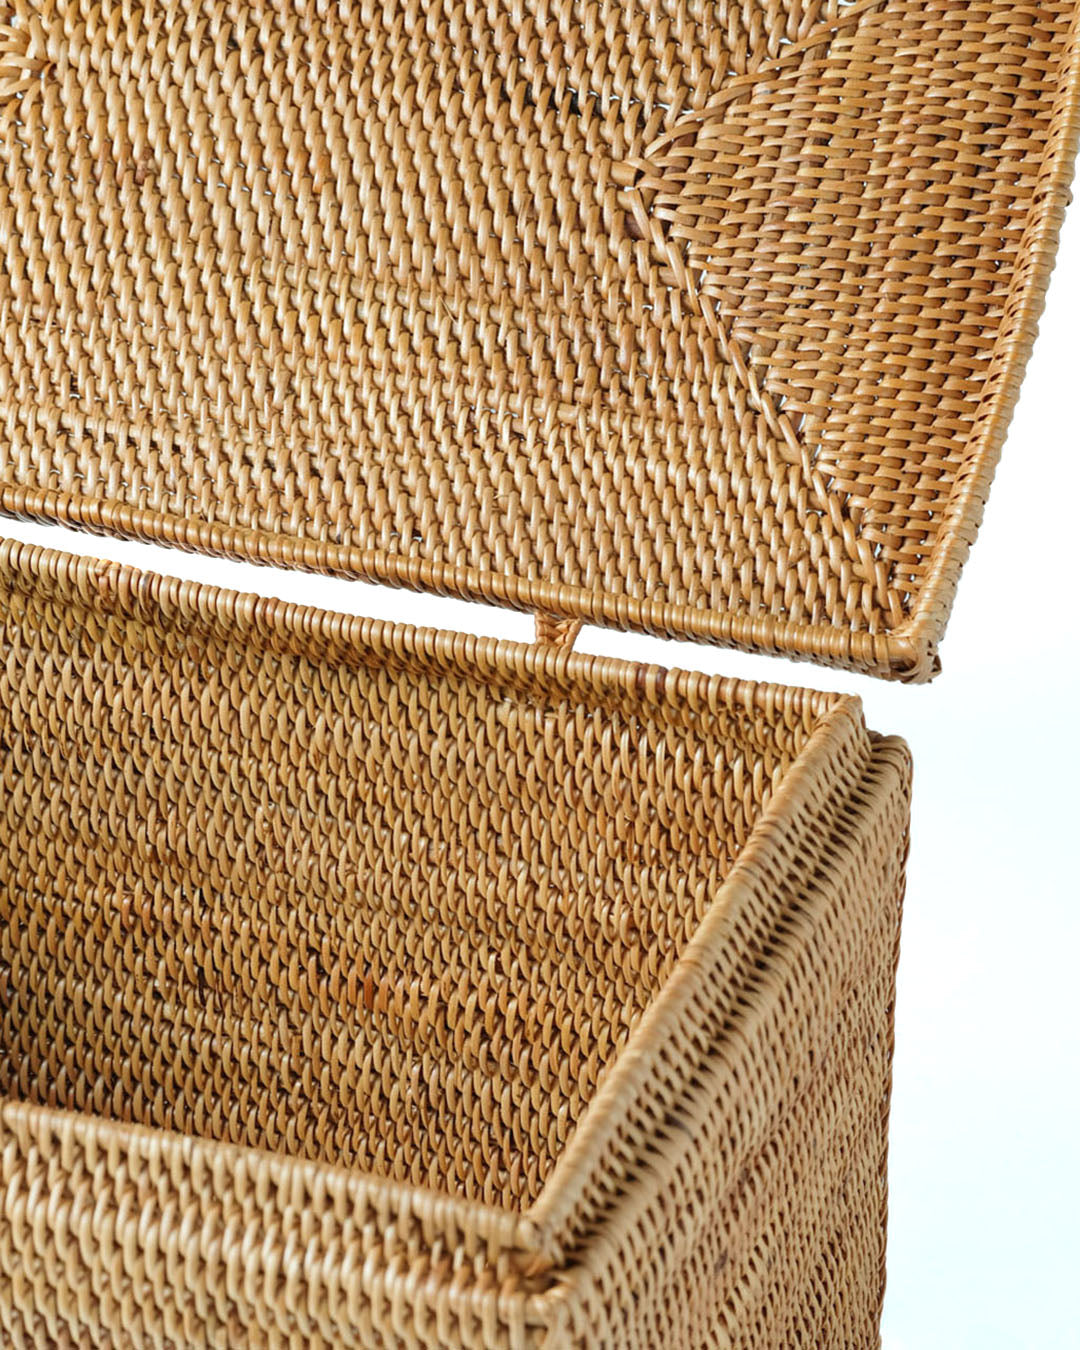 Caja de ratán 100% natural Halus Tidore decorativa rectangular con tapa y traba, tejido a mano, acabado natural,  altura 14 cm largo 16 cm profundidad 25 cm, fabricado en Indonesia